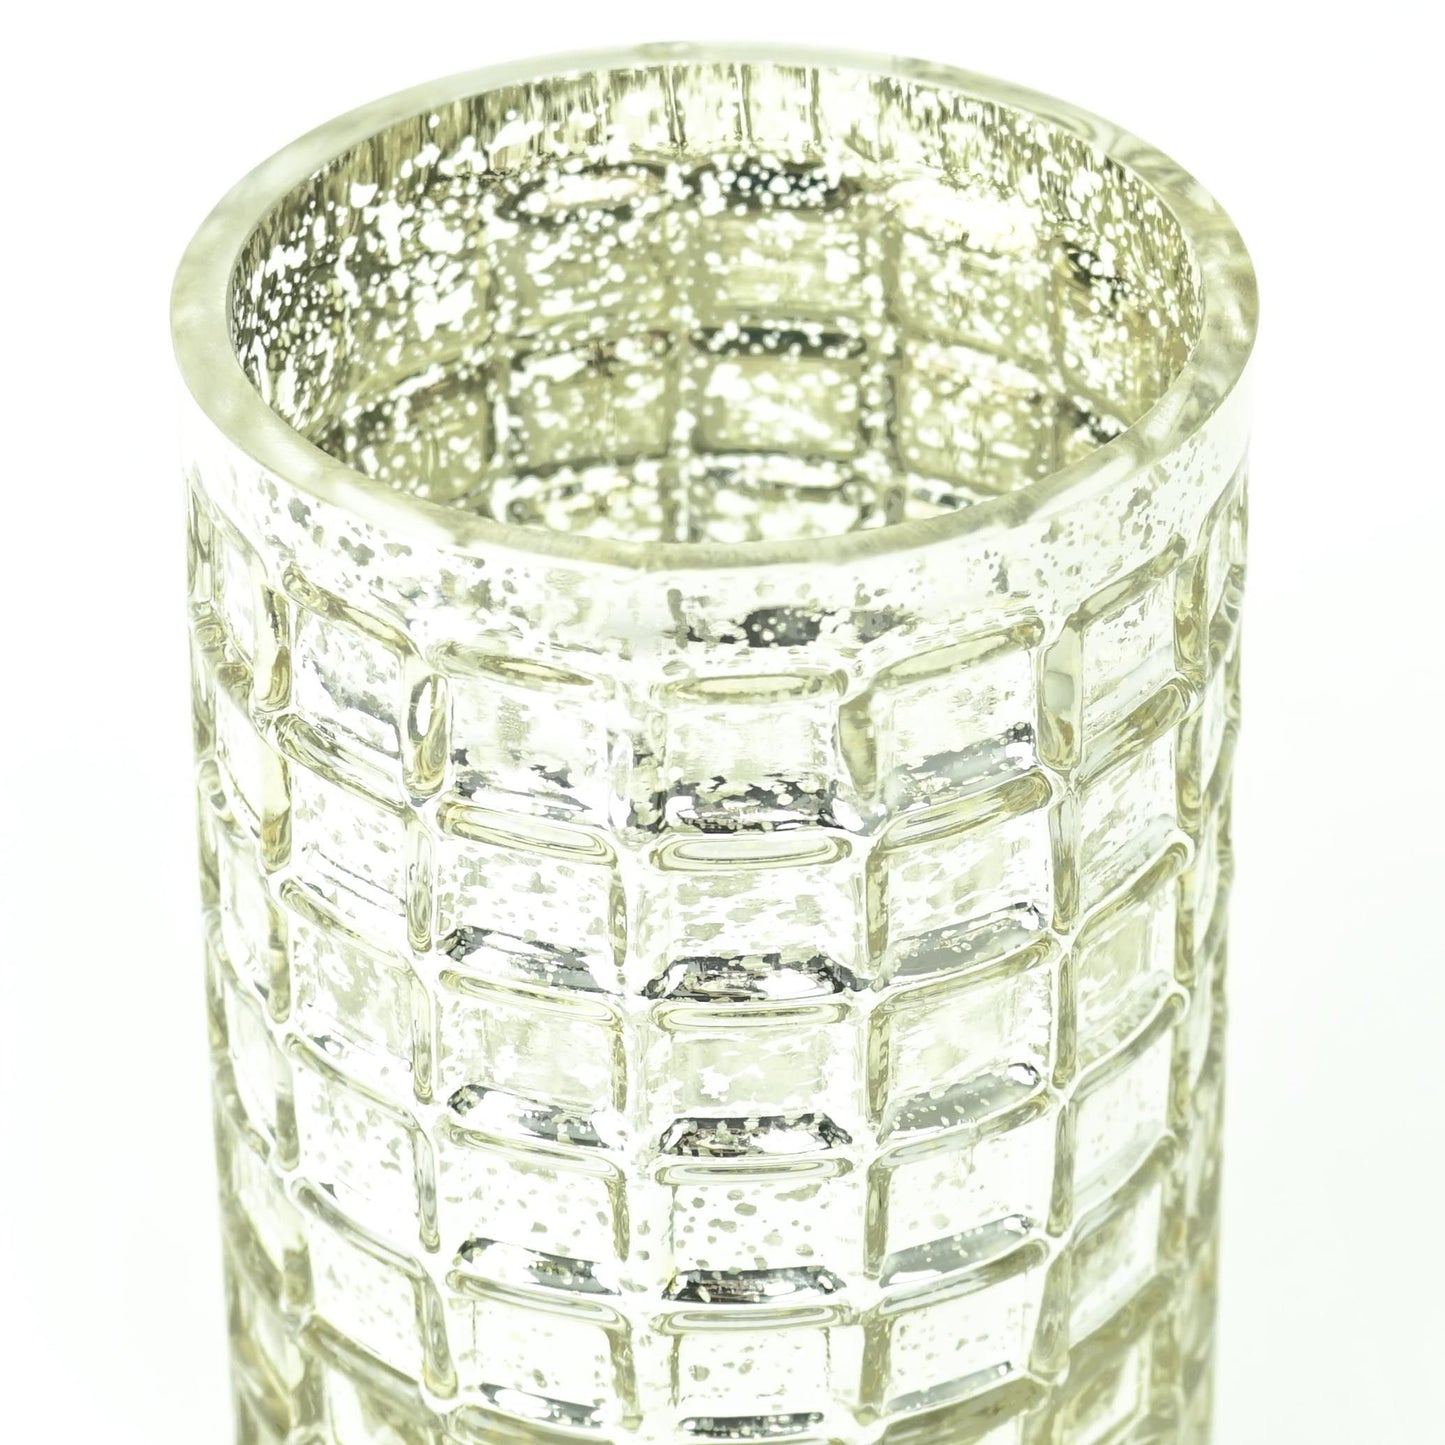 7" Mosaic Glass Cylinder Vase - Mercury